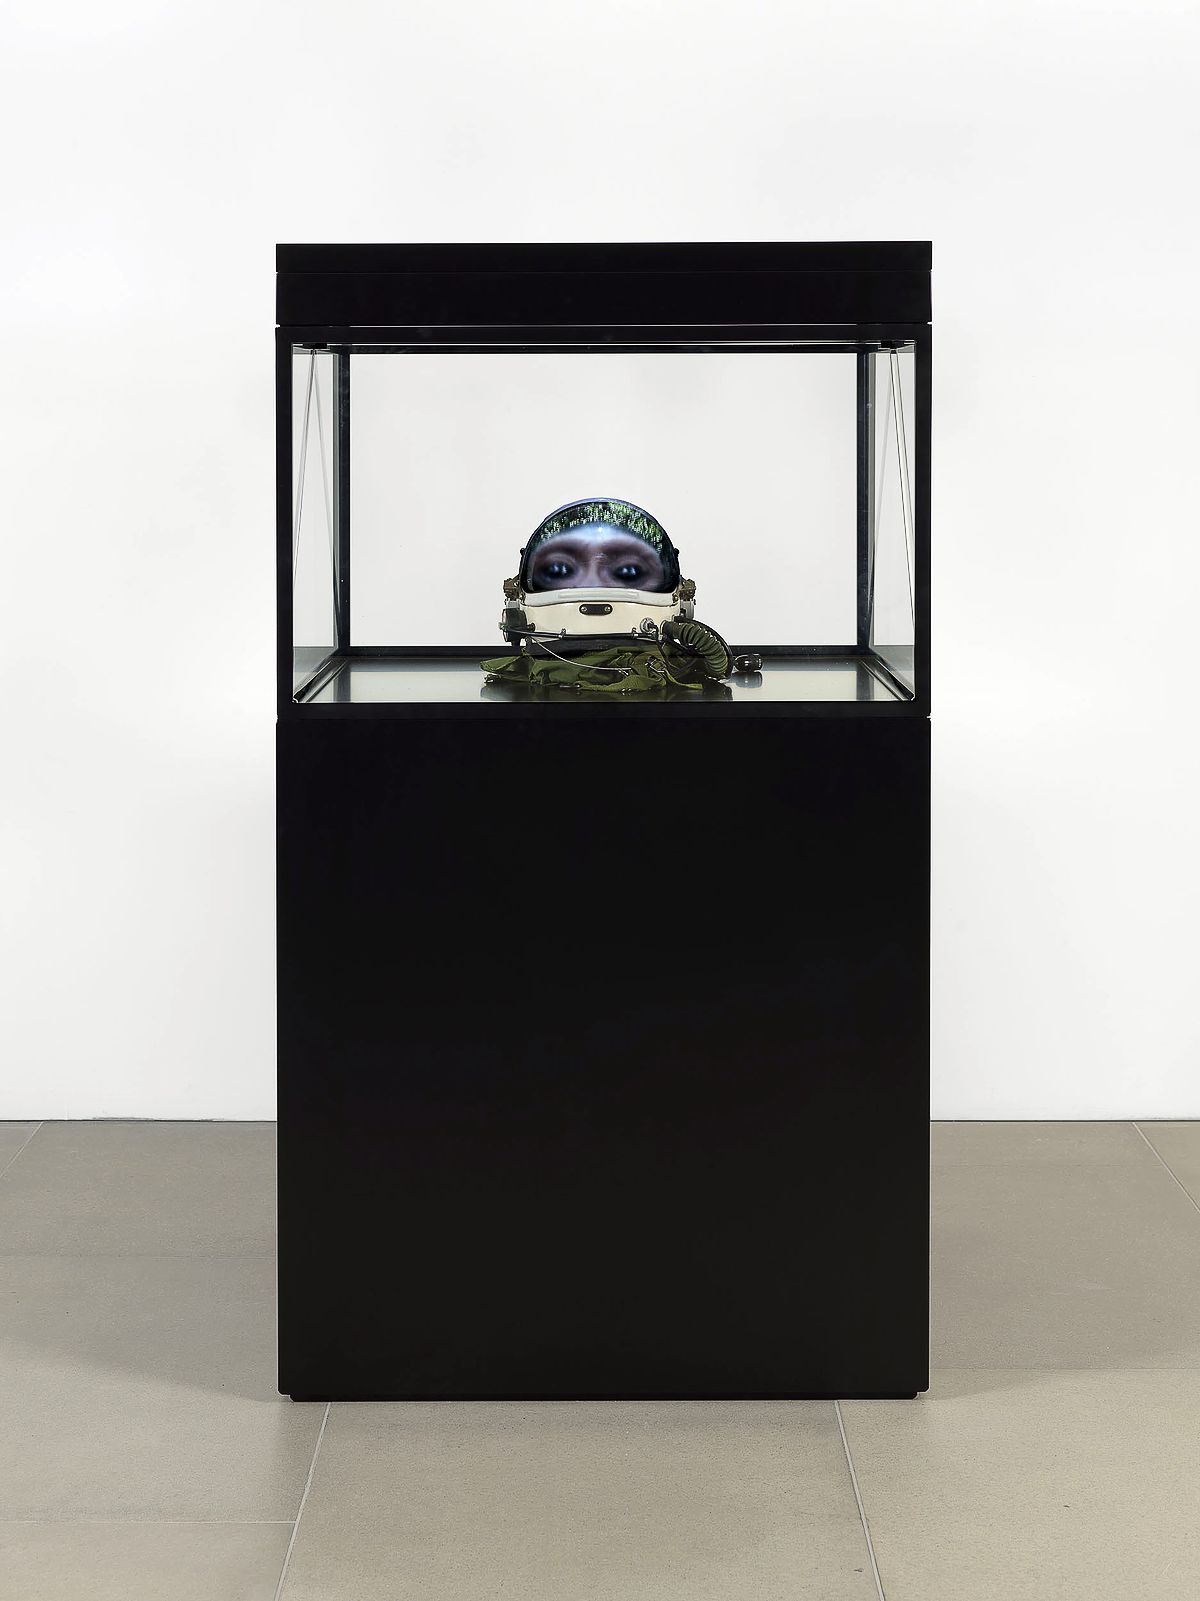 Мэт Коллишоу. Alpha Omega, 2016 г. Космический шлем, копия черепа, ЖК-экран, медиаплеер, стекло, дерево, 164 x 90 x 100 см, фото 1